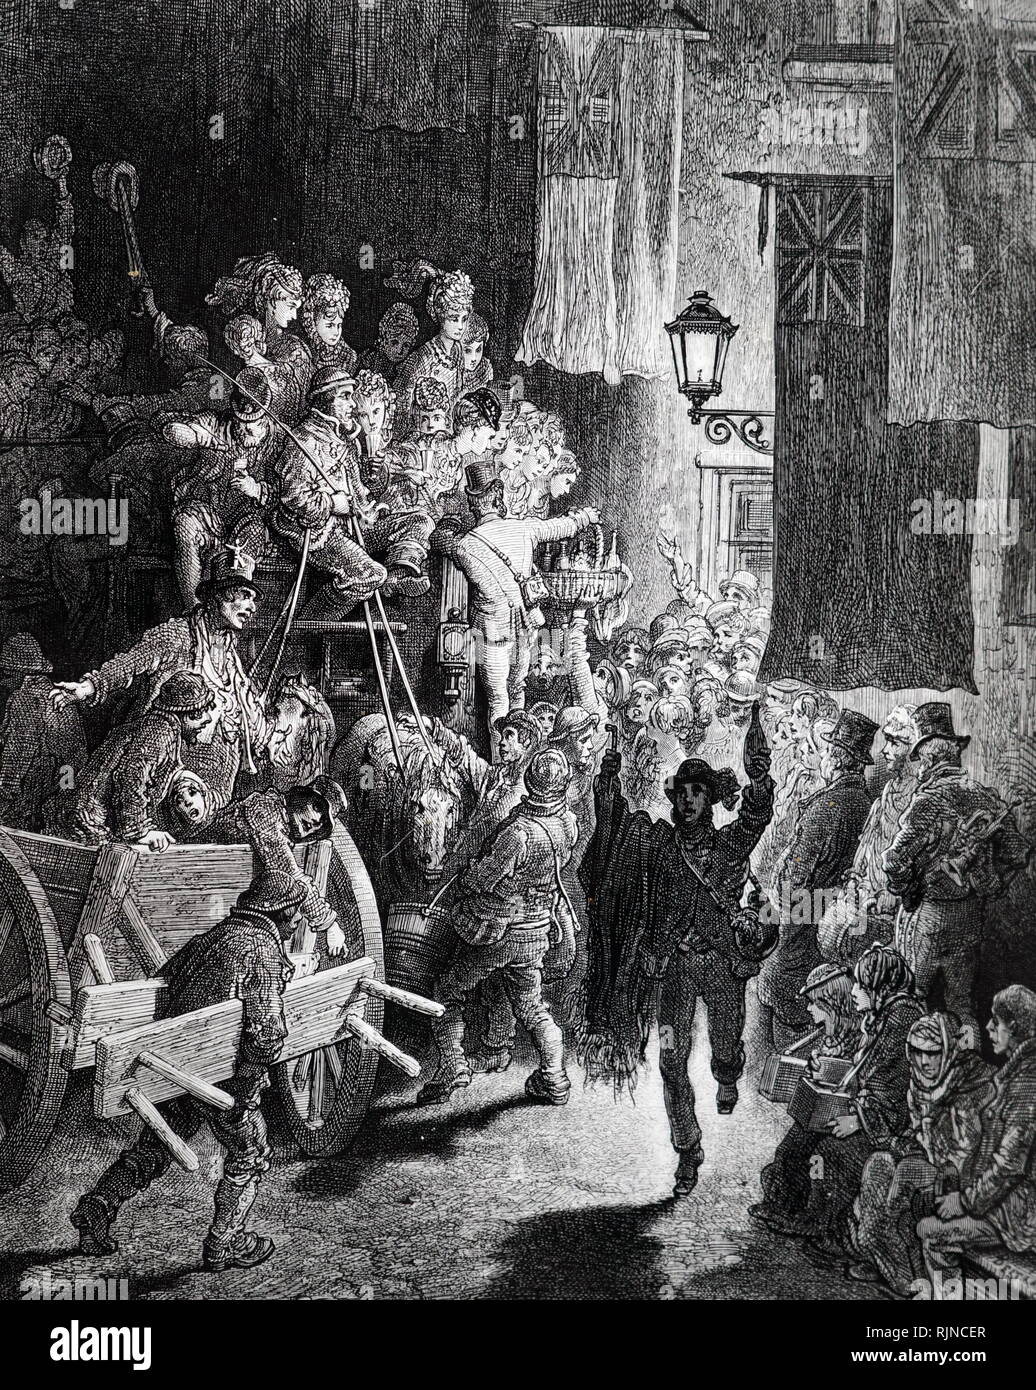 Une gravure illustrant les Londoniens au retour de le Derby à travers des rues éclairées par le gaz. En date du 19e siècle Banque D'Images